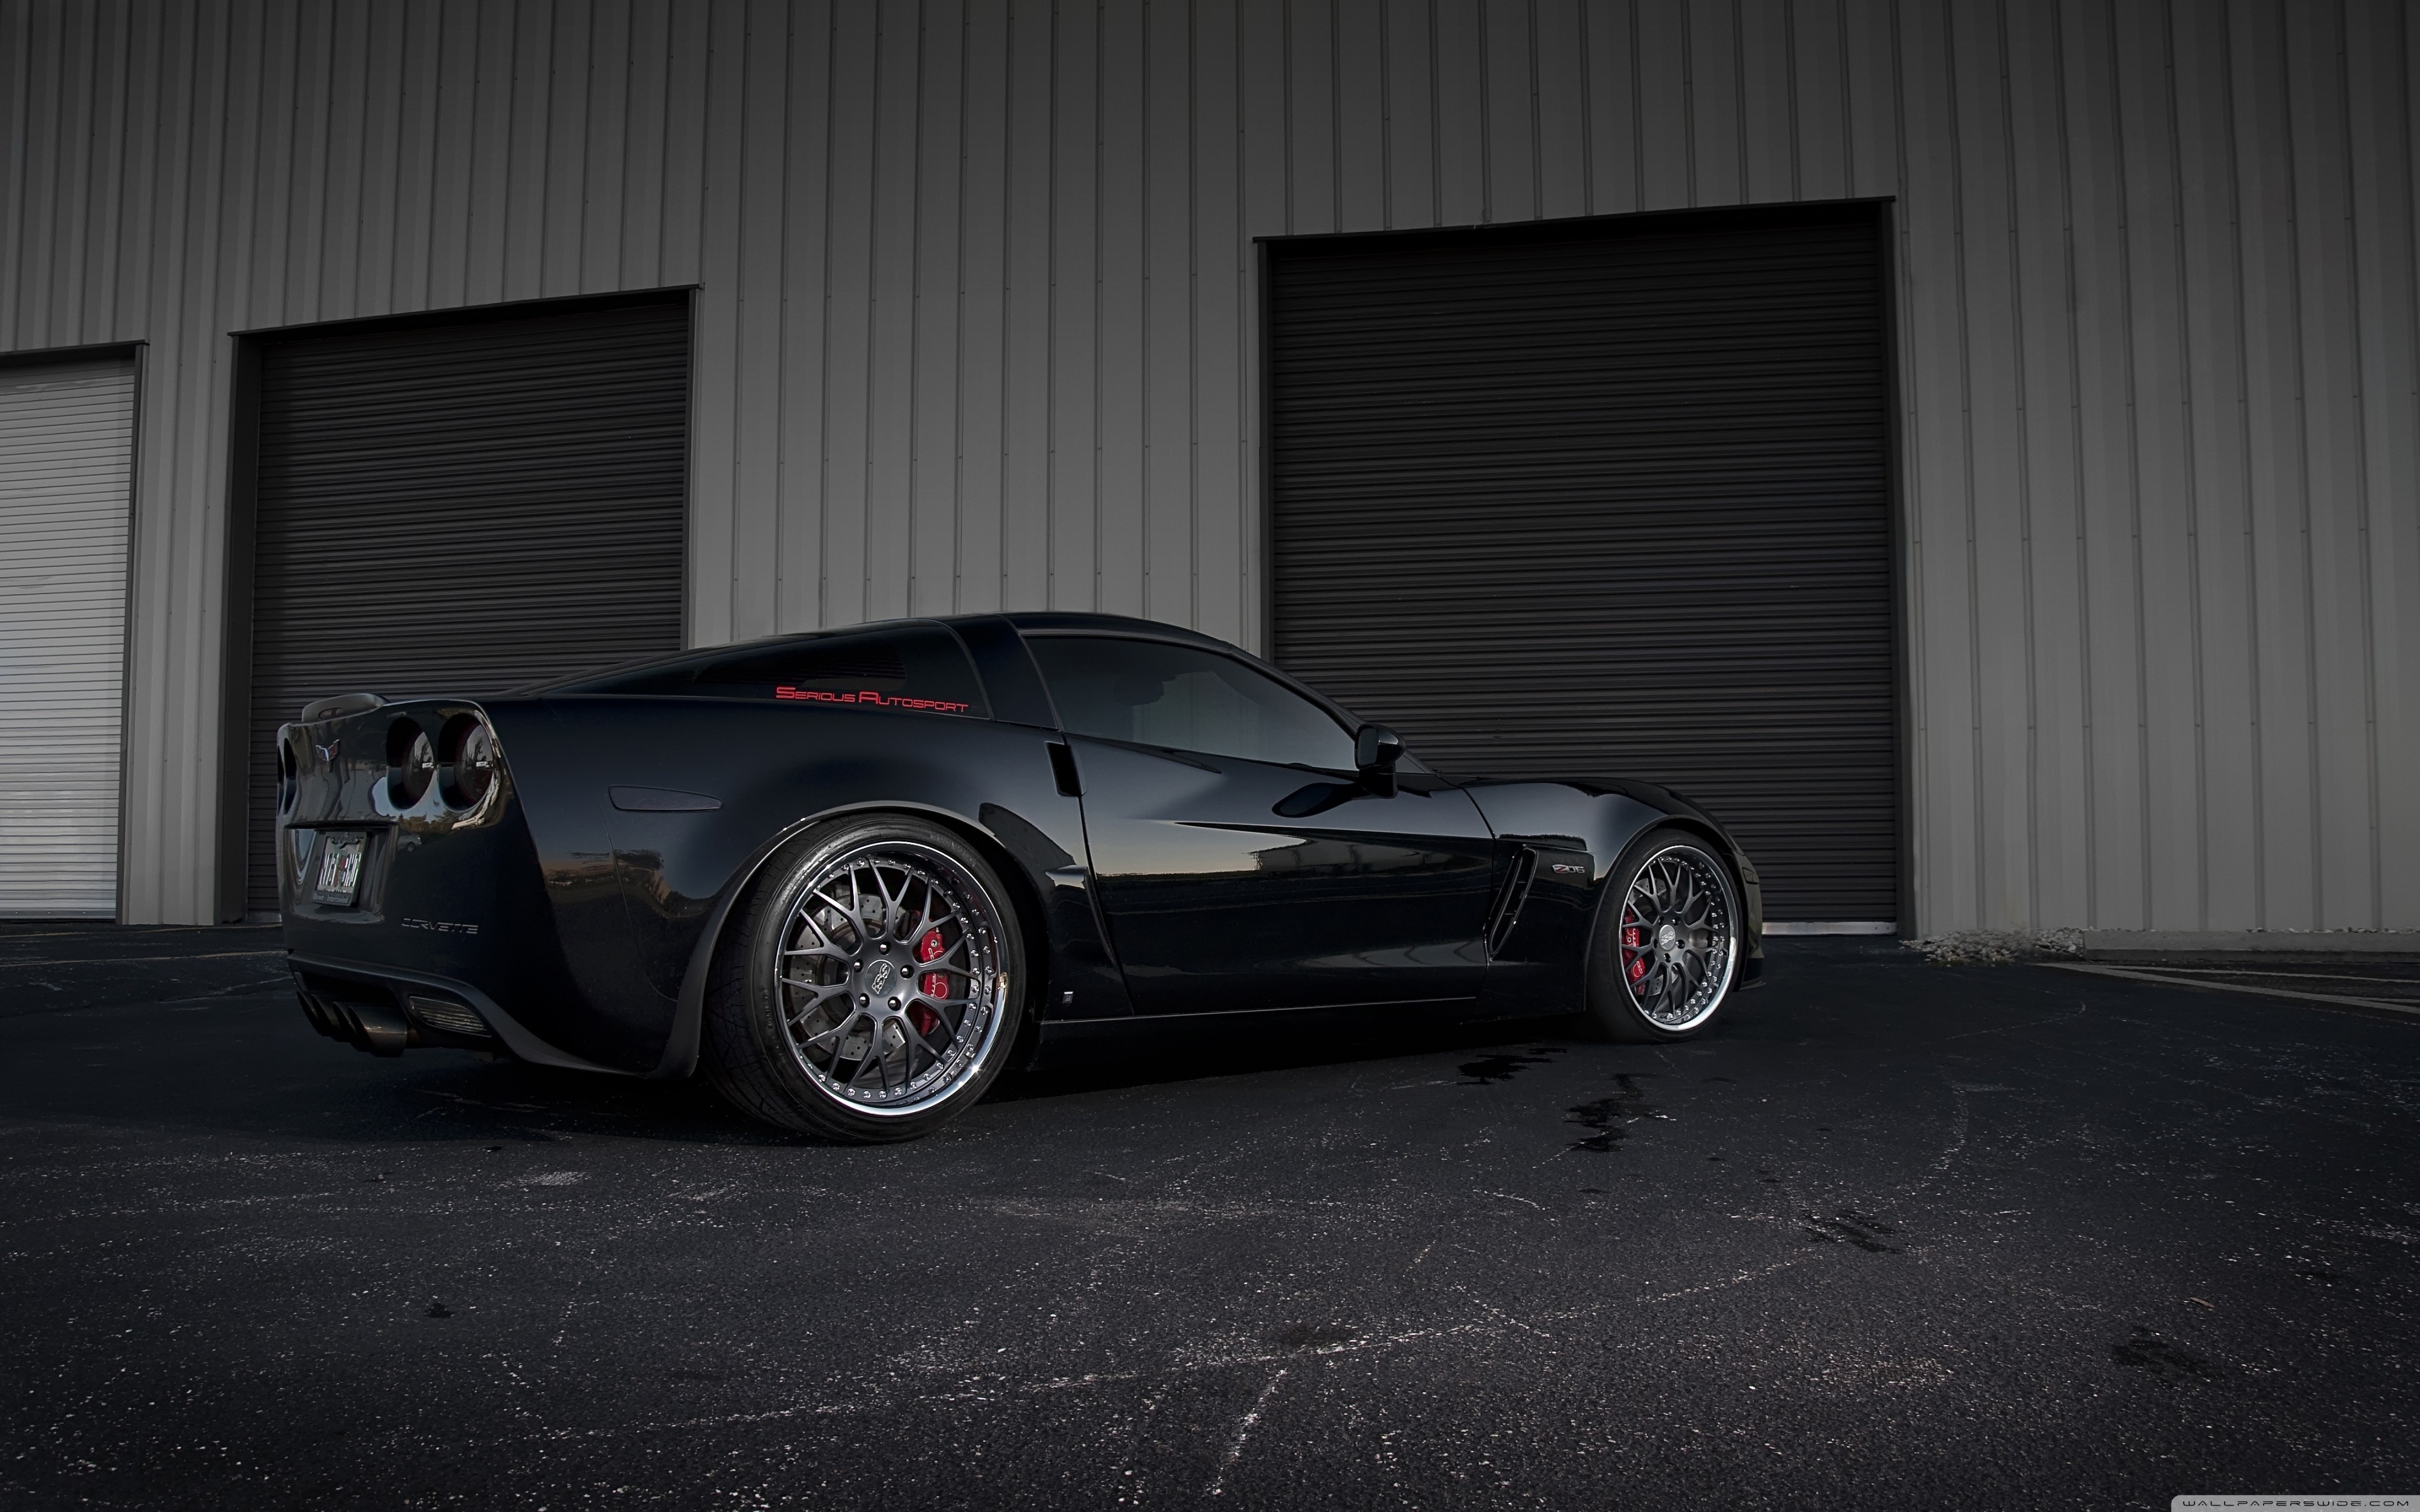 Black Corvette Wallpapers